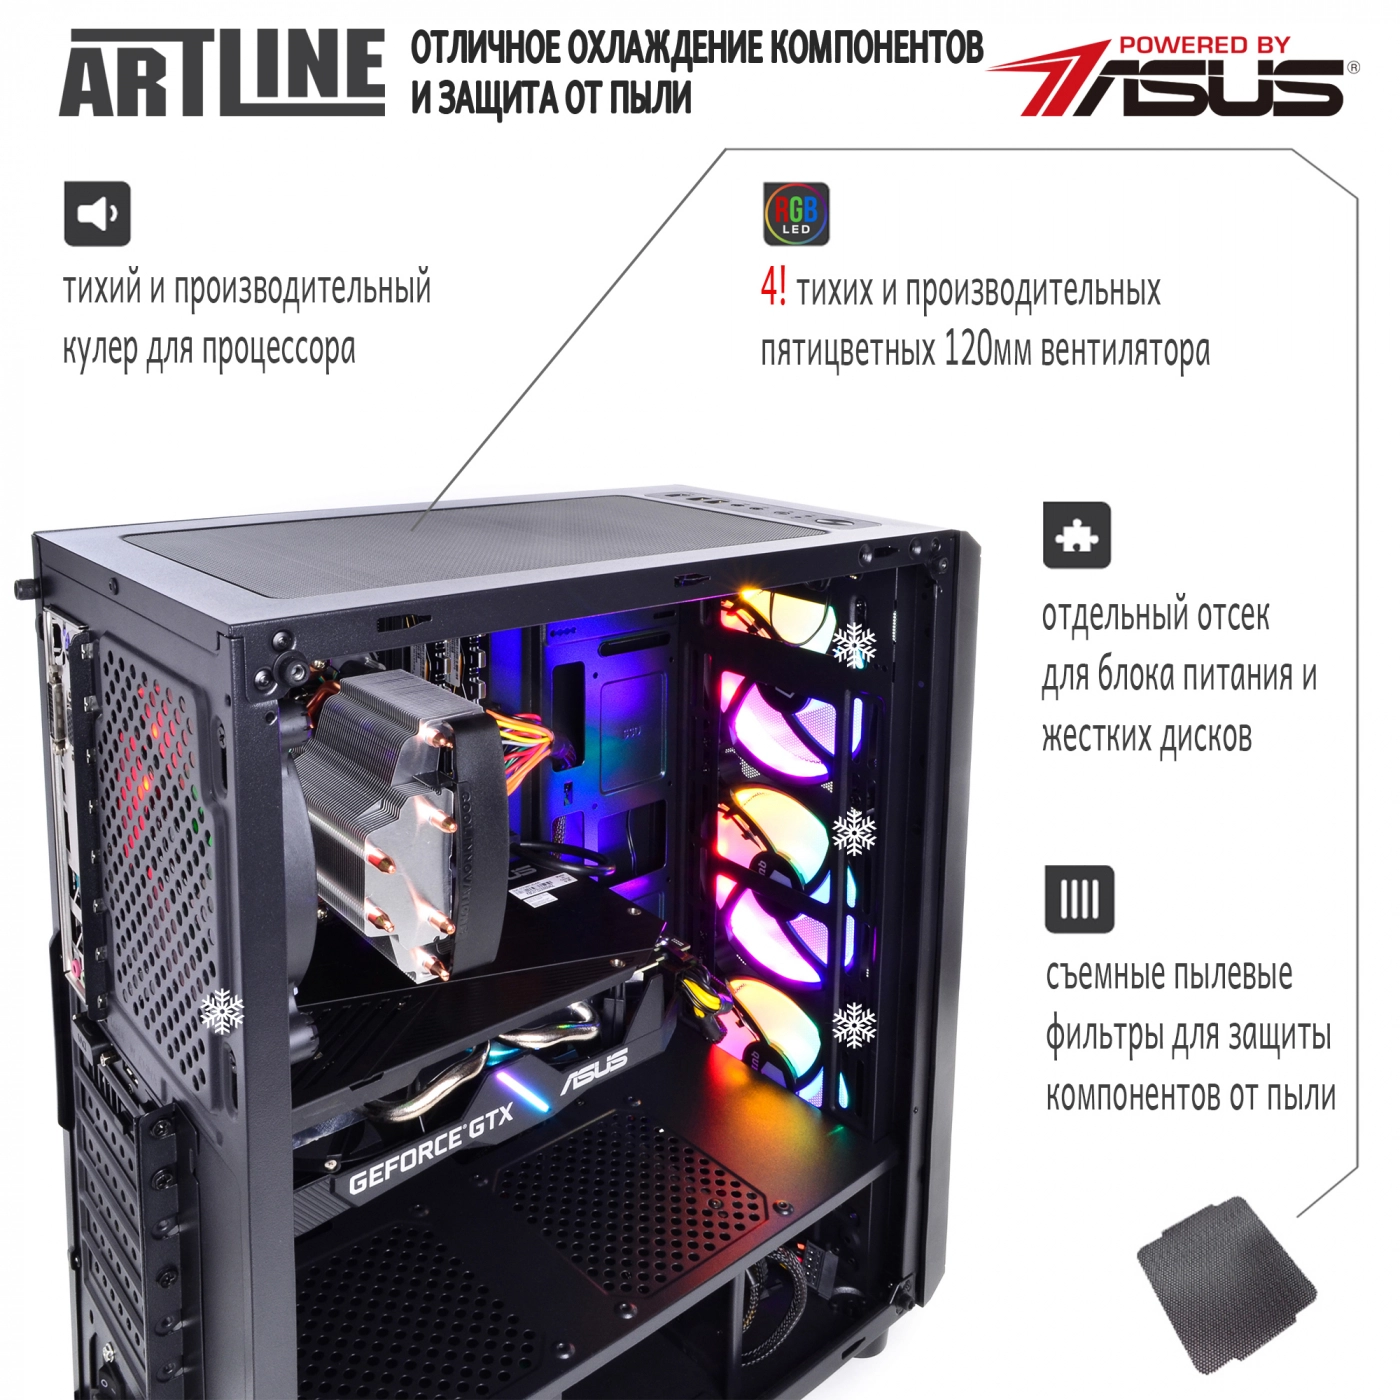 Купить Компьютер ARTLINE Gaming X53v14 - фото 3